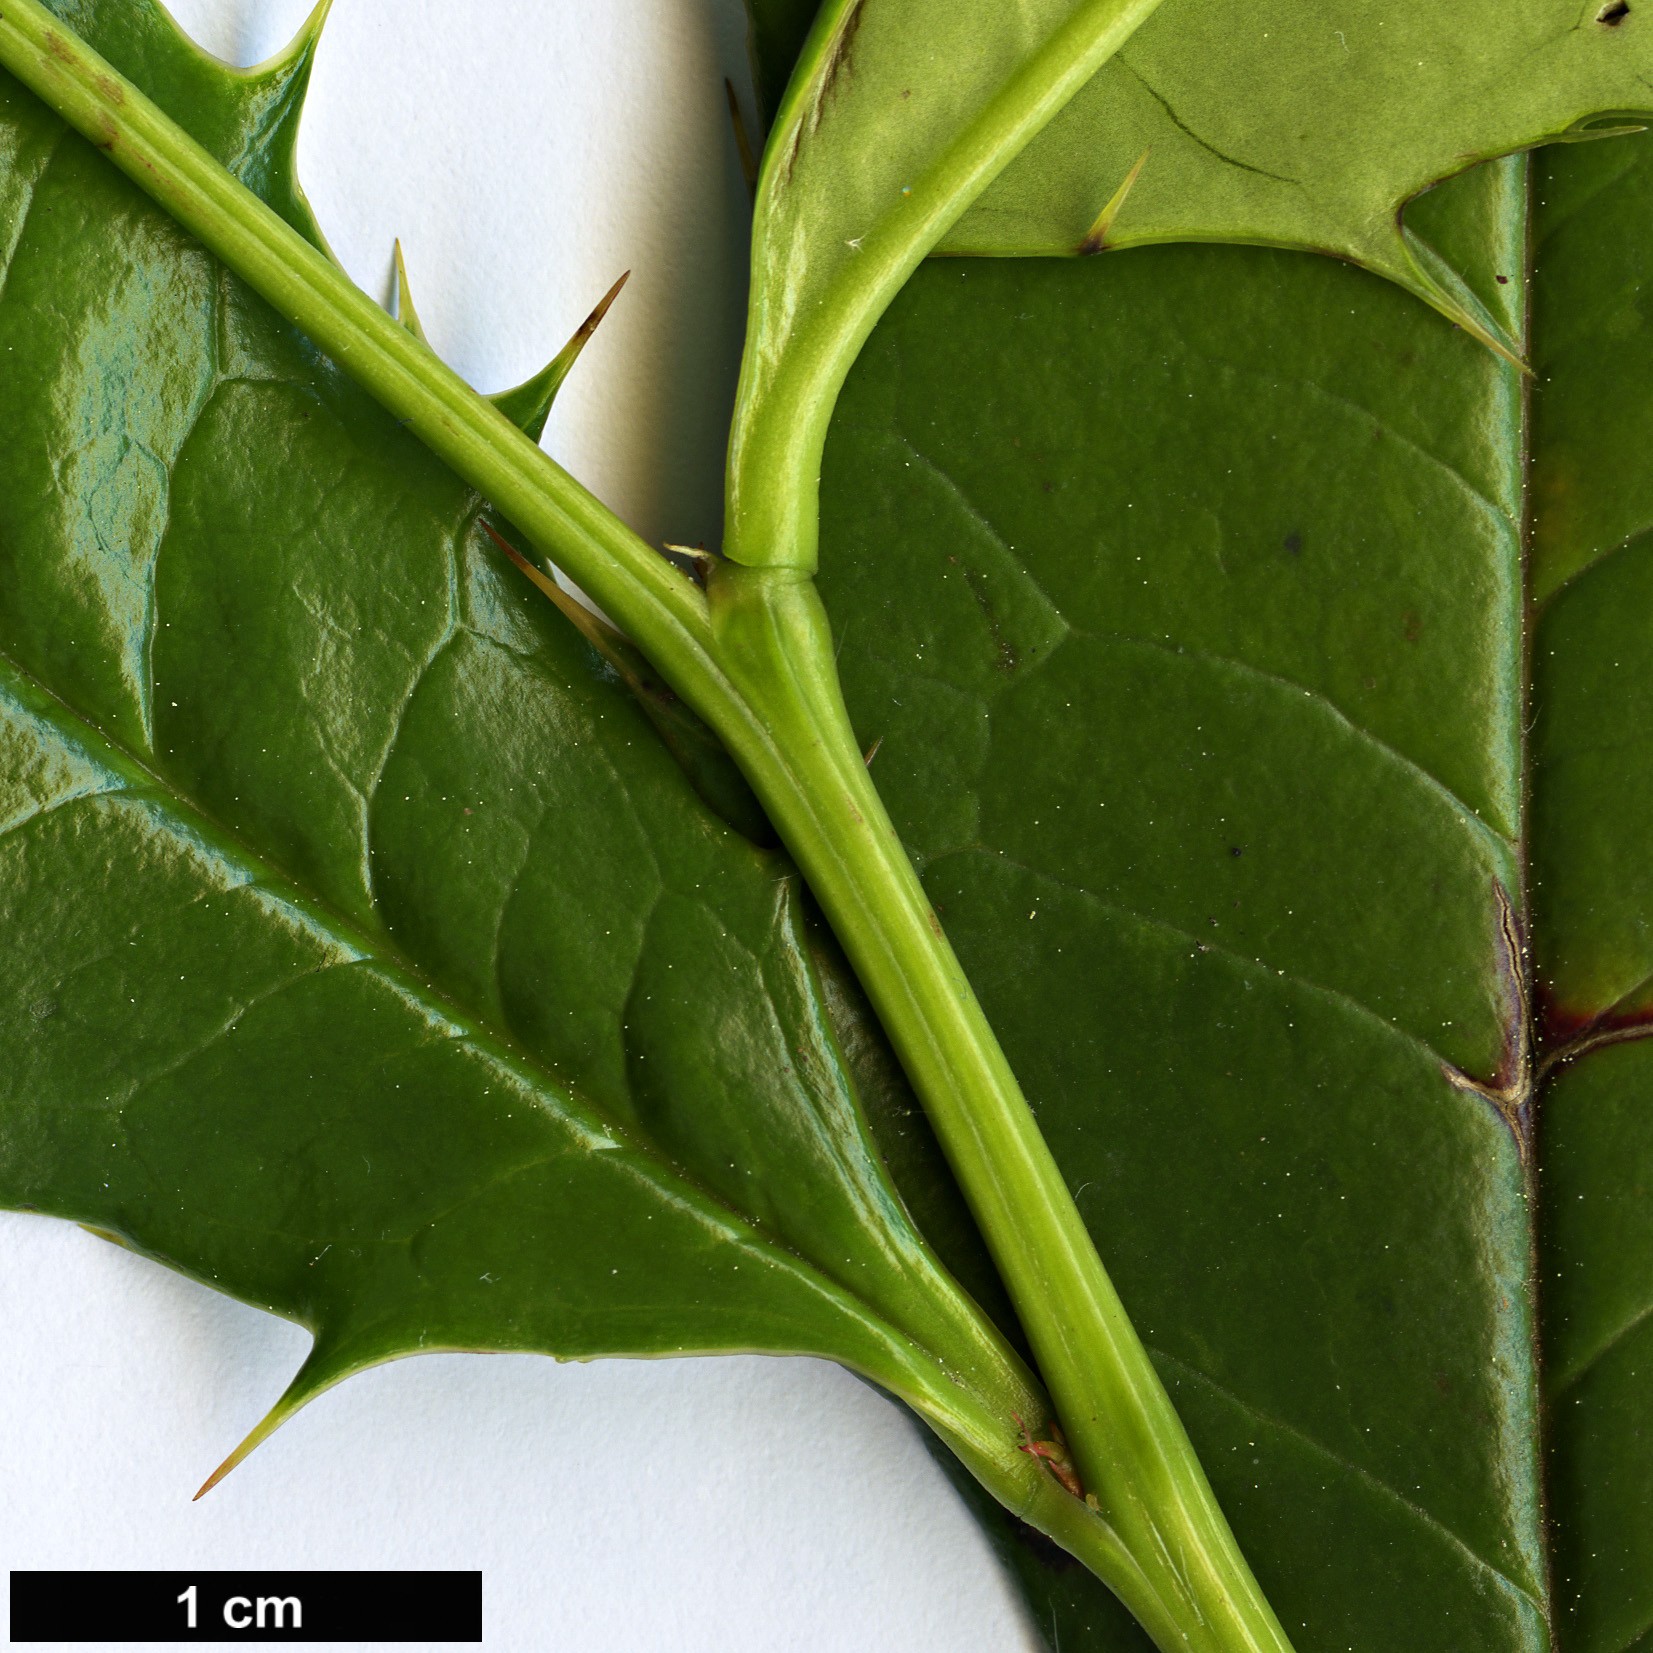 High resolution image: Family: Berberidaceae - Genus: Berberis - Taxon: insignis